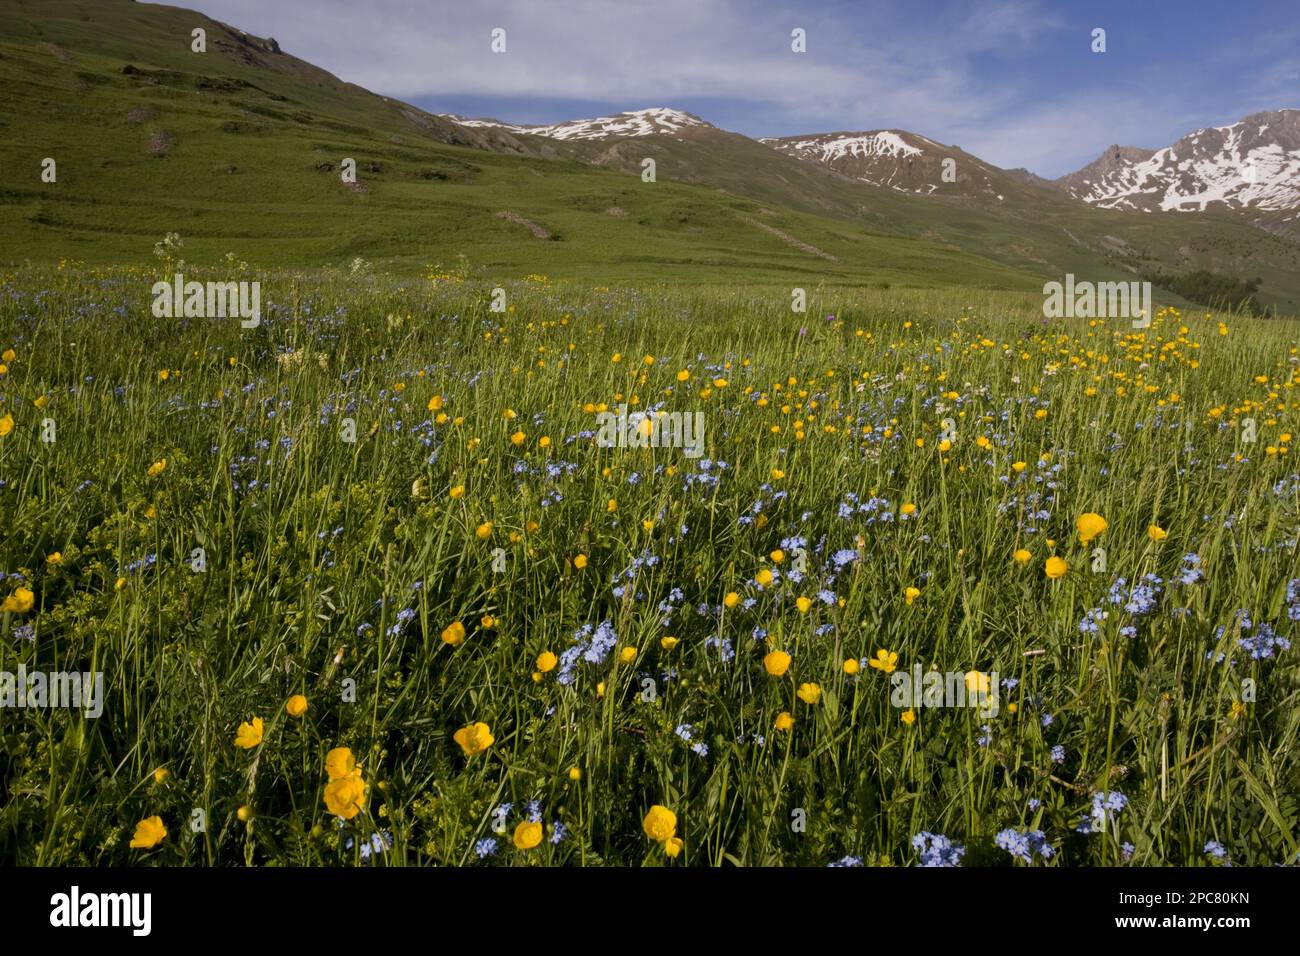 Habitat de pâturage riche en espèces avec buttercups et Forget-me-nots, Col d'Agnel, Parc naturel régional du Queyras, Alpes, France, Europe Banque D'Images